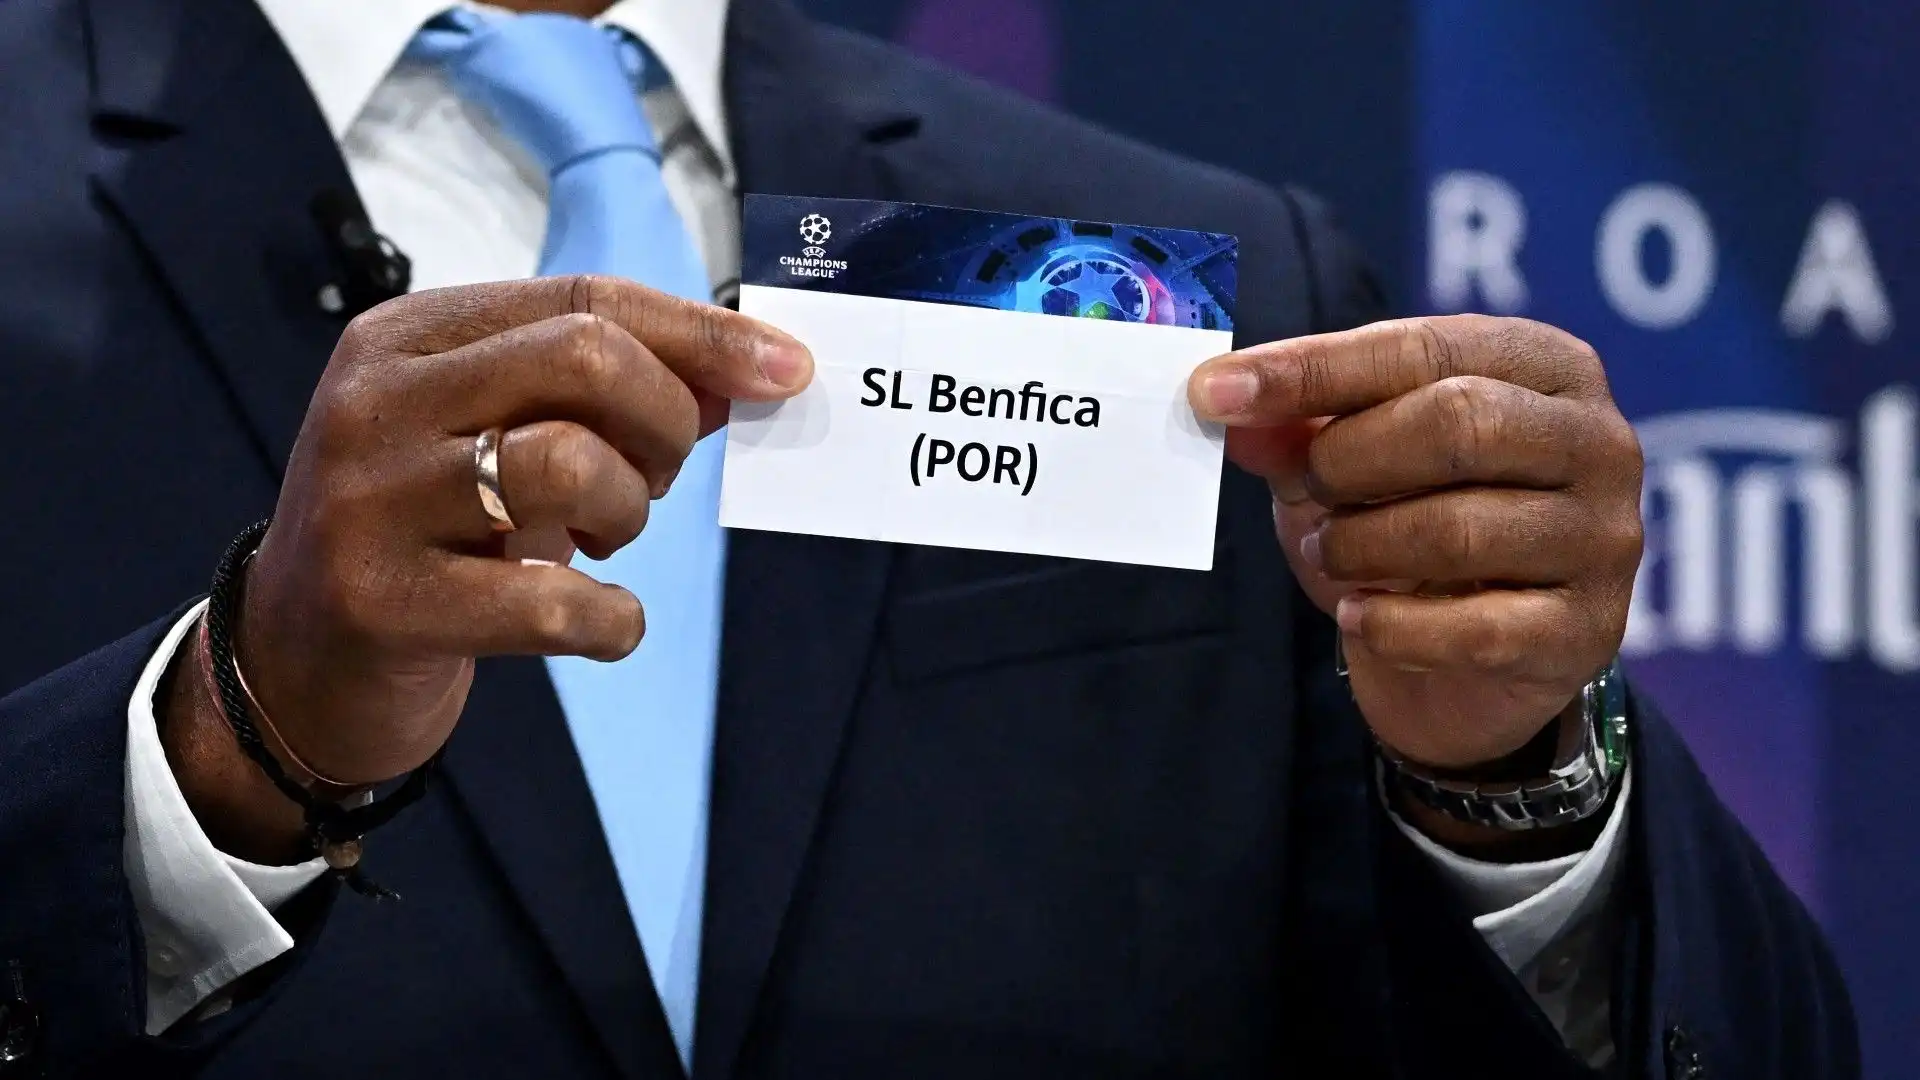 L'avversario del Benfica sarà l'Inter